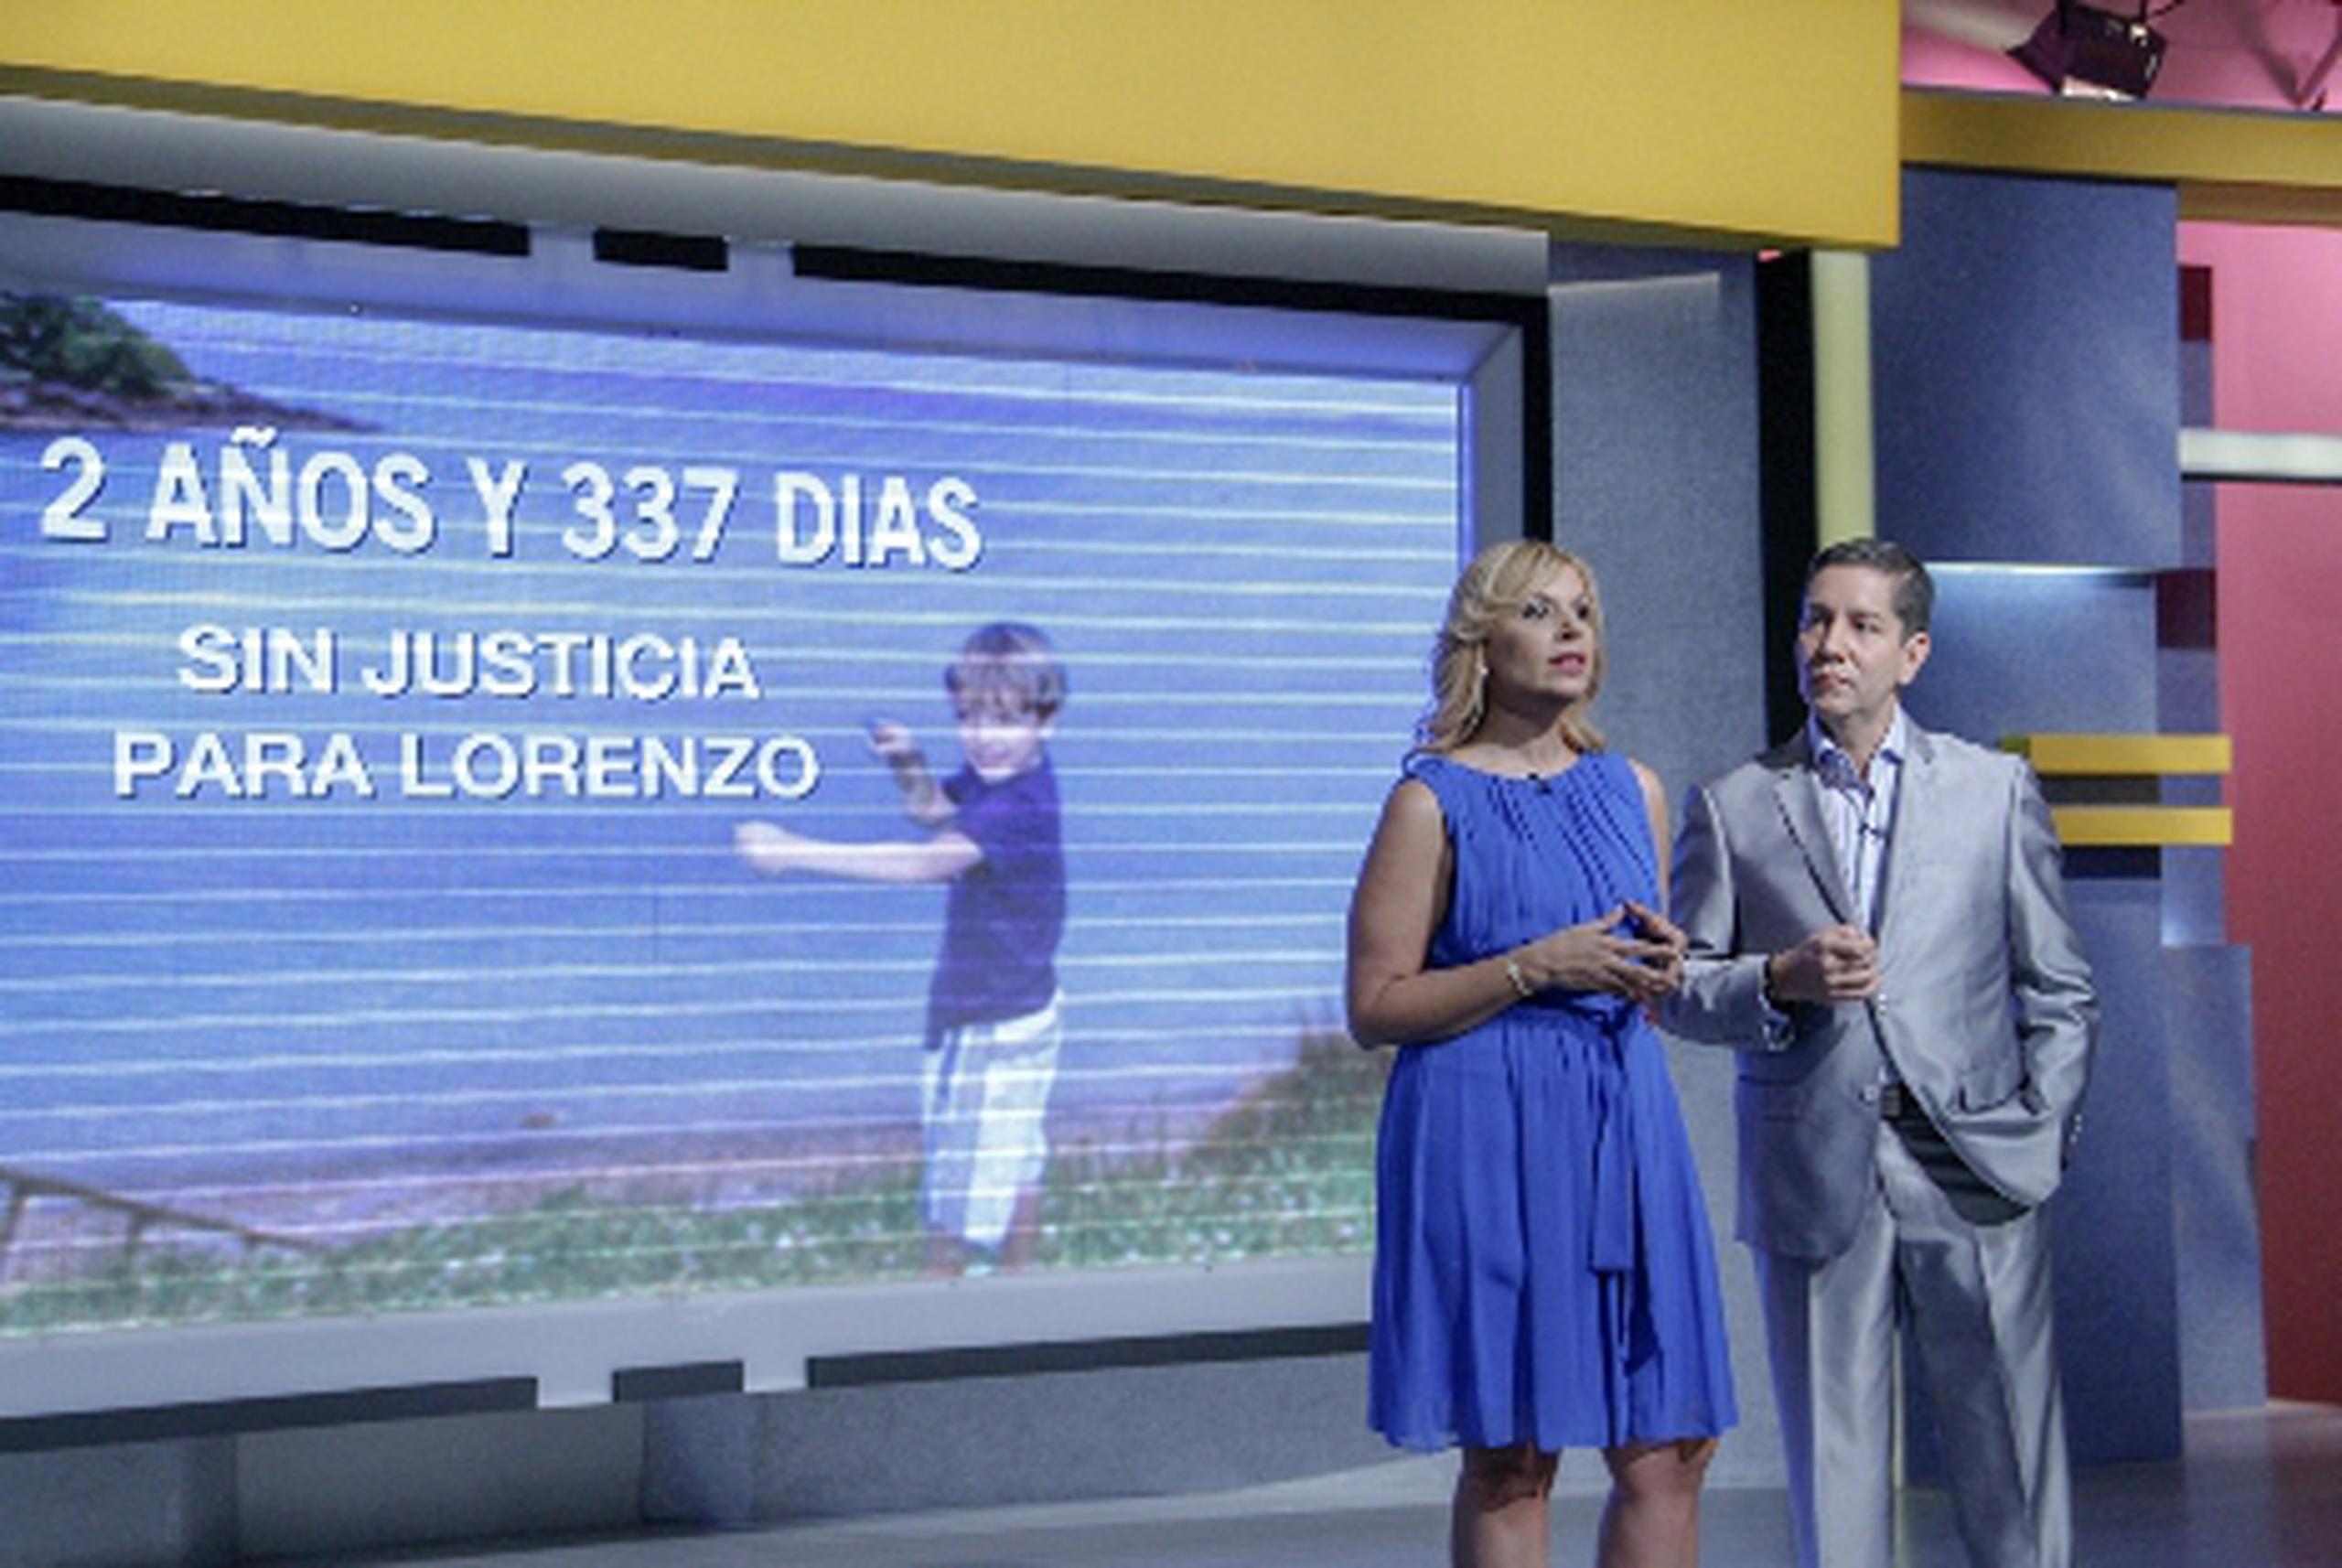 Sylvia Hernández y Frankie Jay analizaron brevemente el caso del niño Lorenzo, uno de los que “Kobbo” Santarrosa privilegiaba en su extinto programa SuperXclusivo.&nbsp;<font color="yellow">(Suministradas)</font>